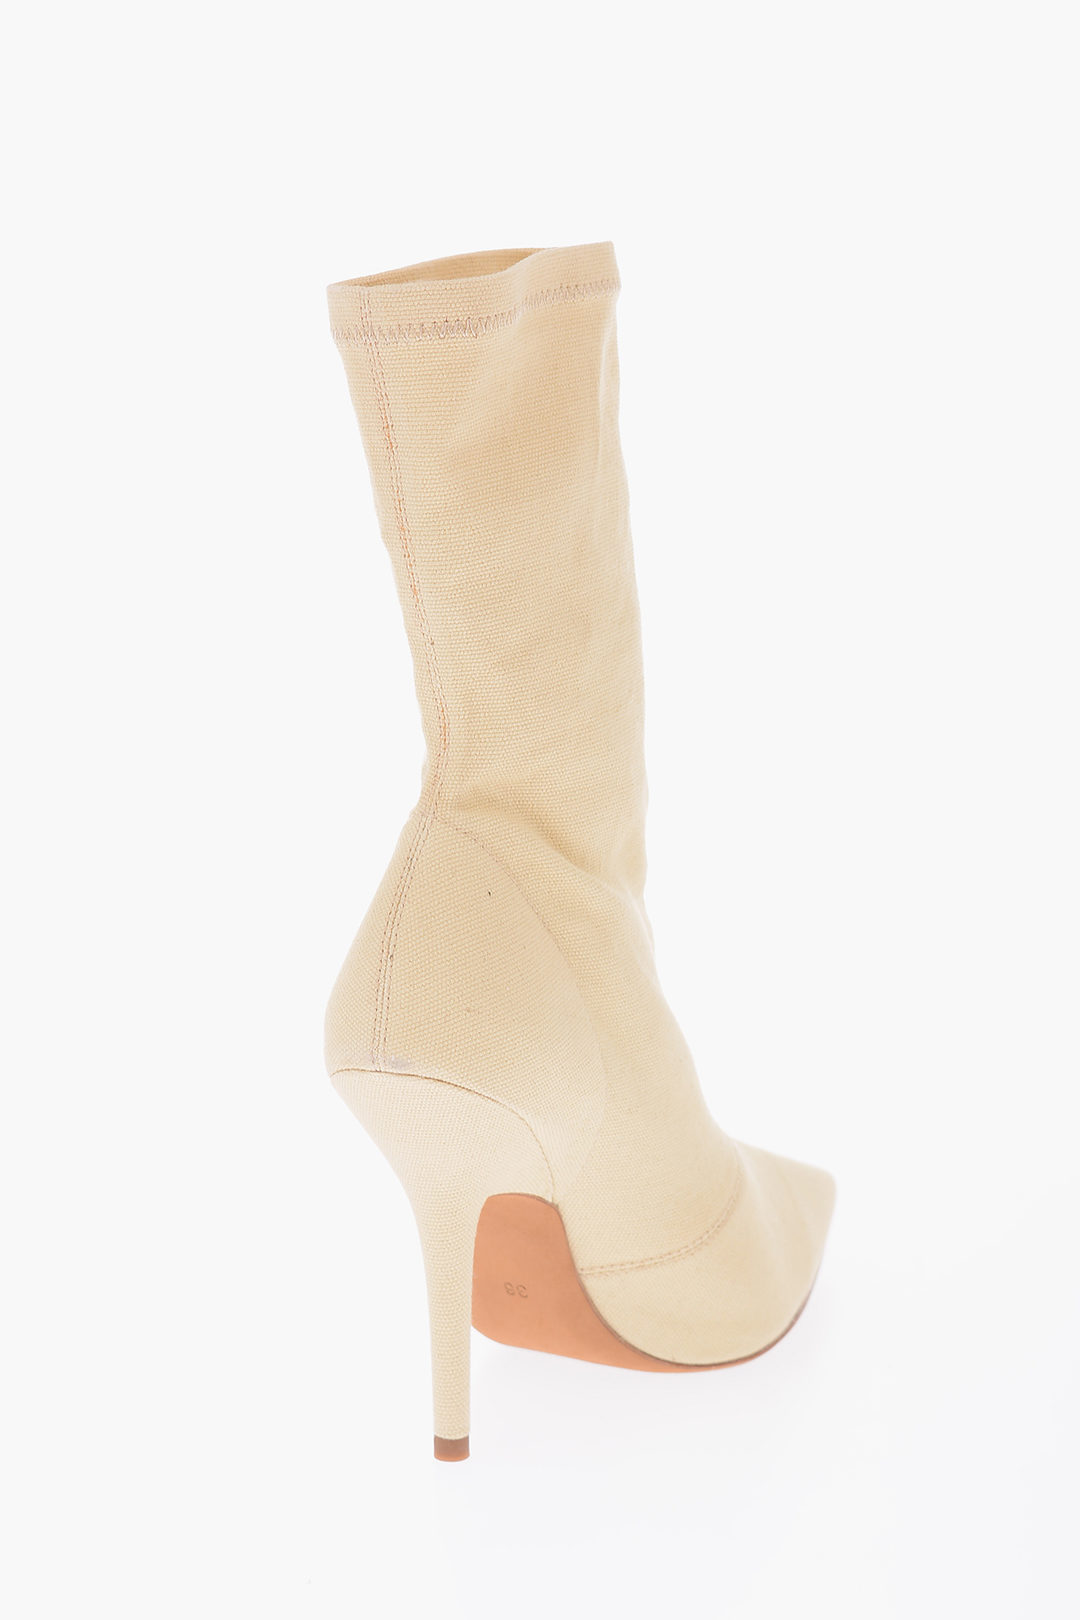 Luxury & Designer products - Yeezy Sock Boots - Women's Tops - IetpShops  Slovenia EU